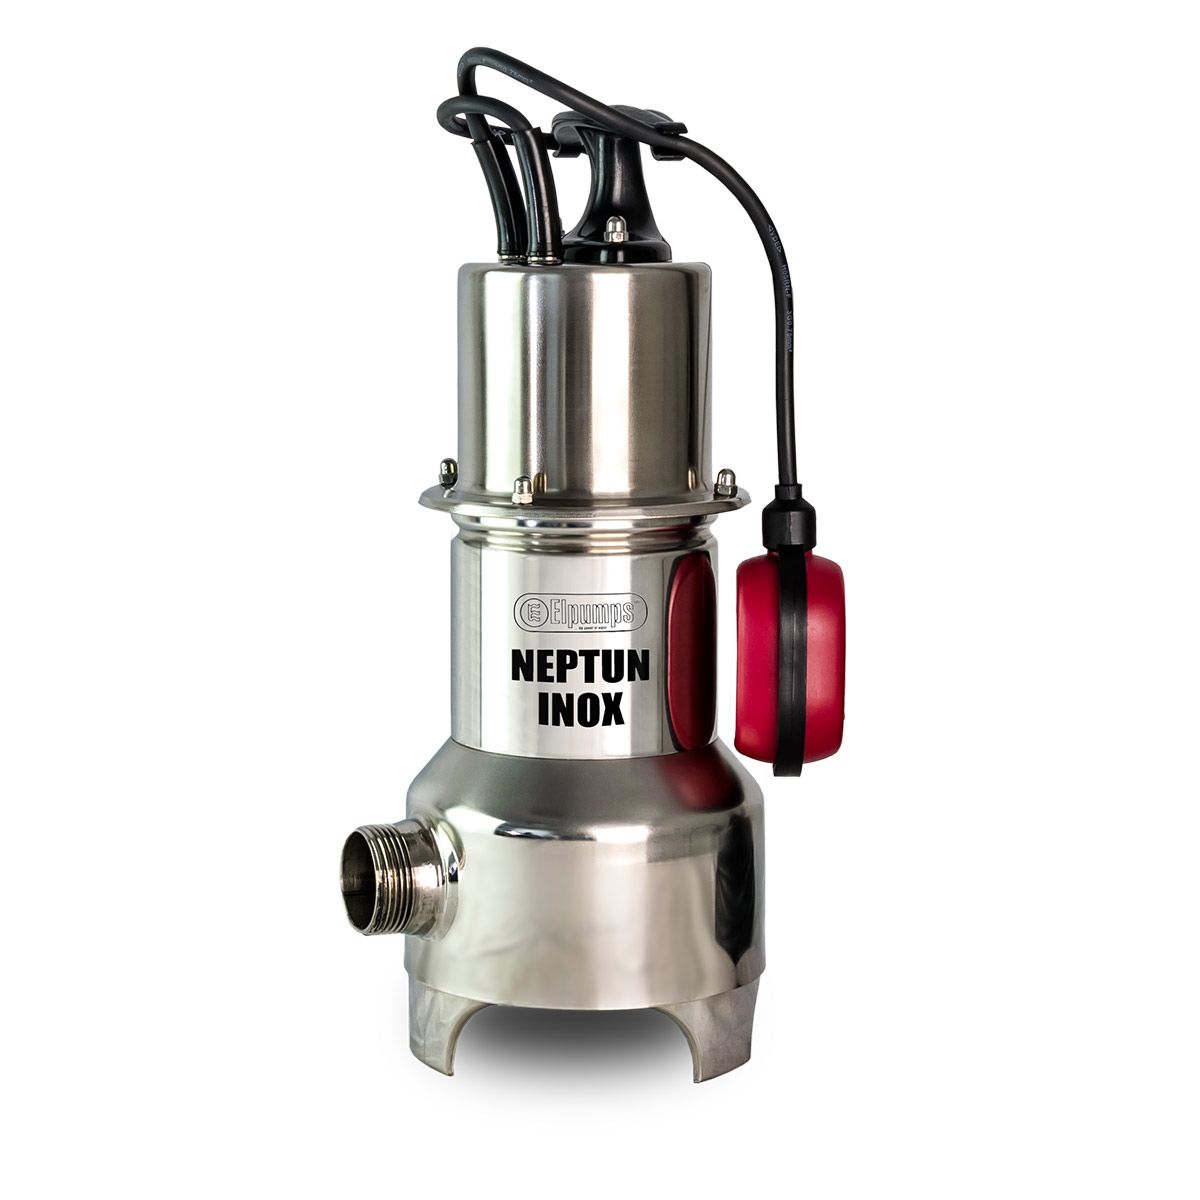 Pompe pour eaux usées NEPTUN INOX, H max 9.0 m, Q max 15000 l/h, 0.8 kW